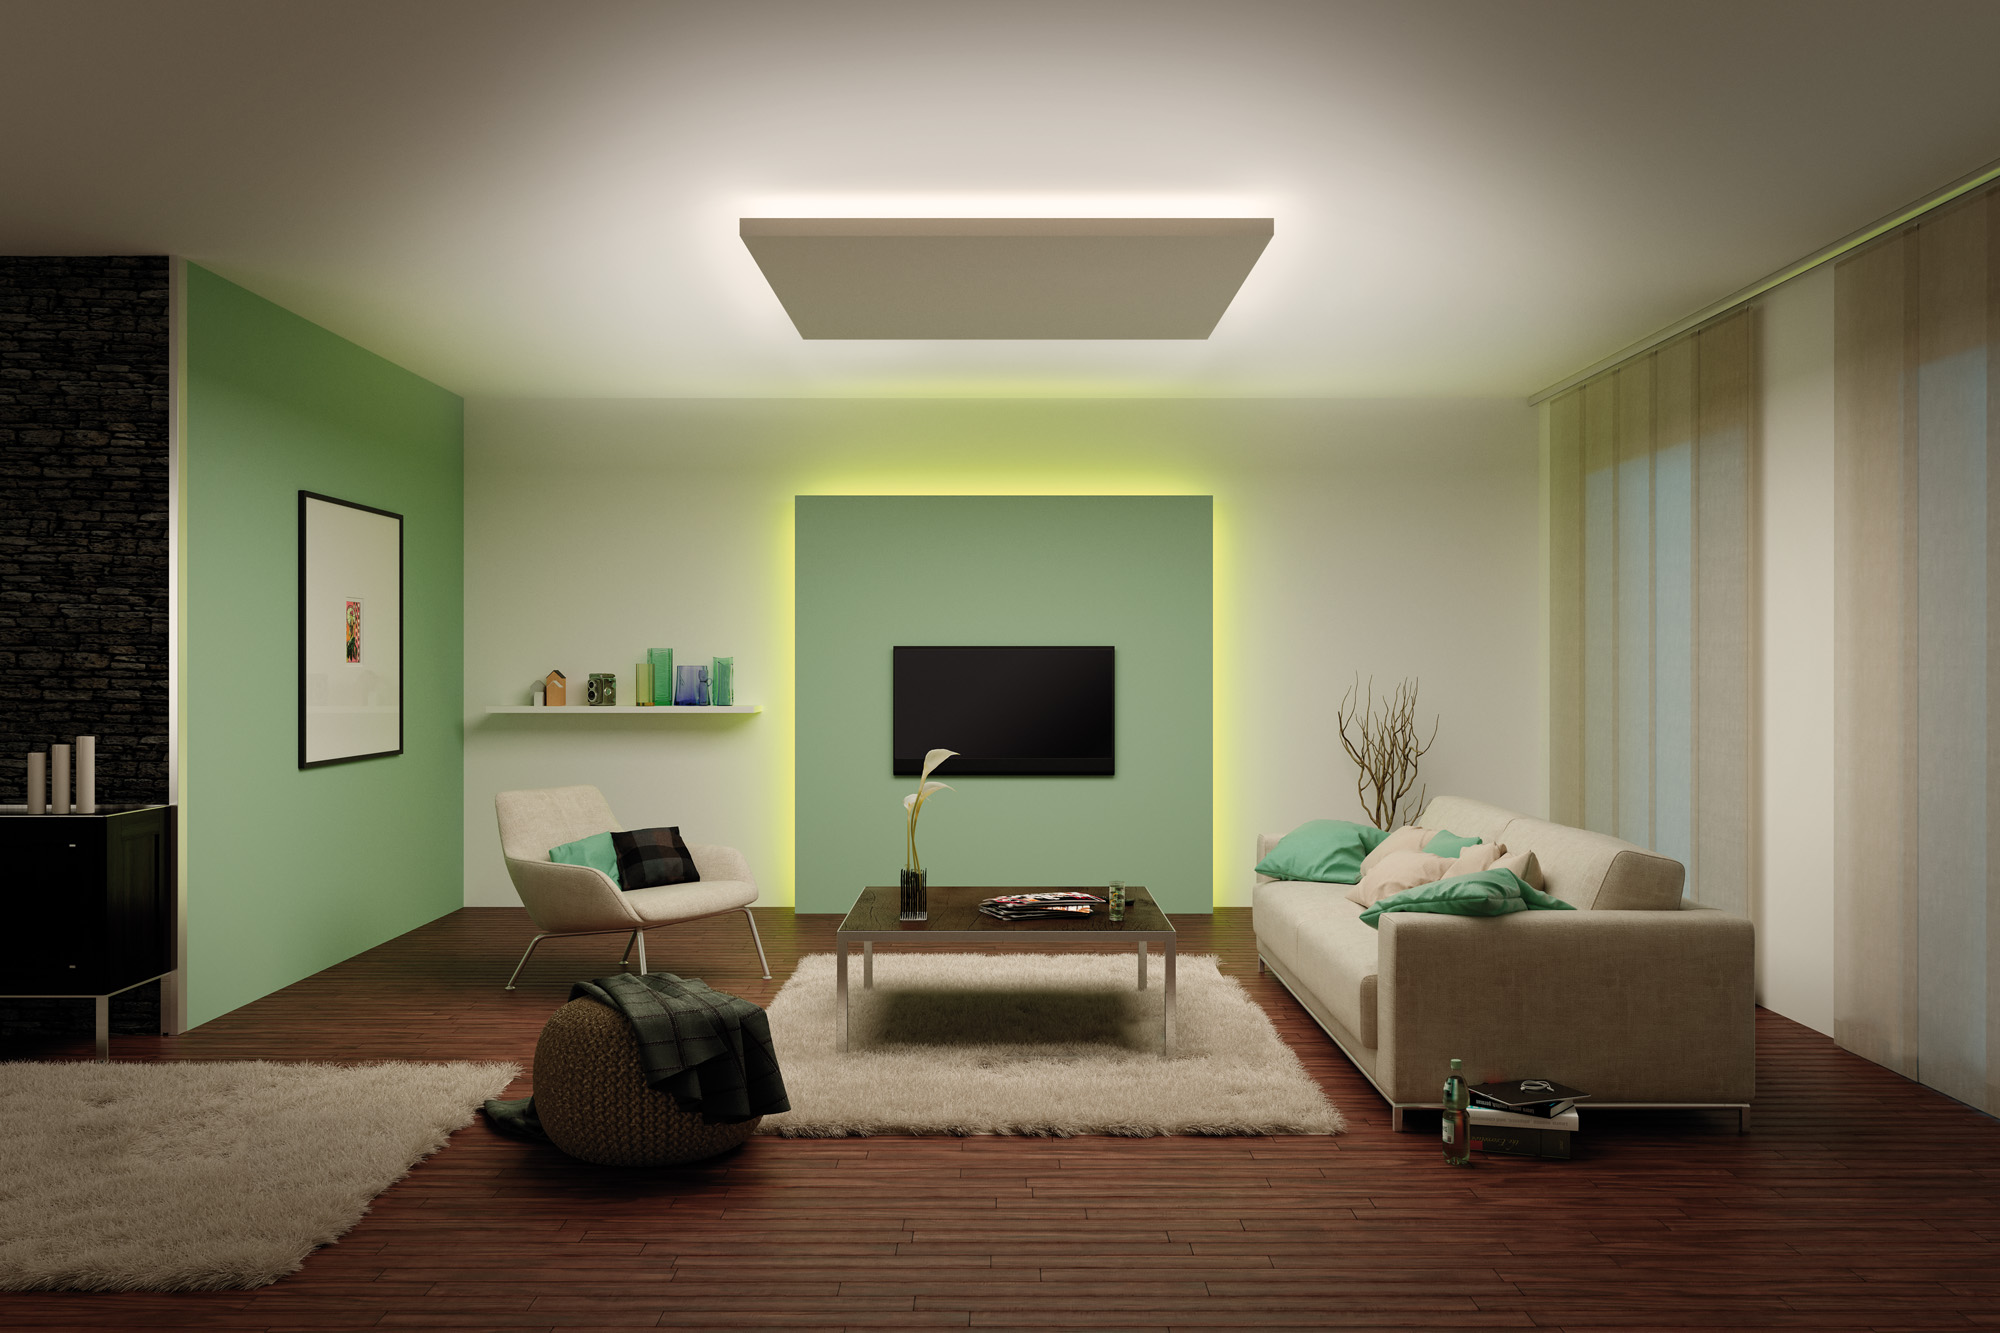 Освещение в квартире - почему стоит использовать точечные лампы и споты